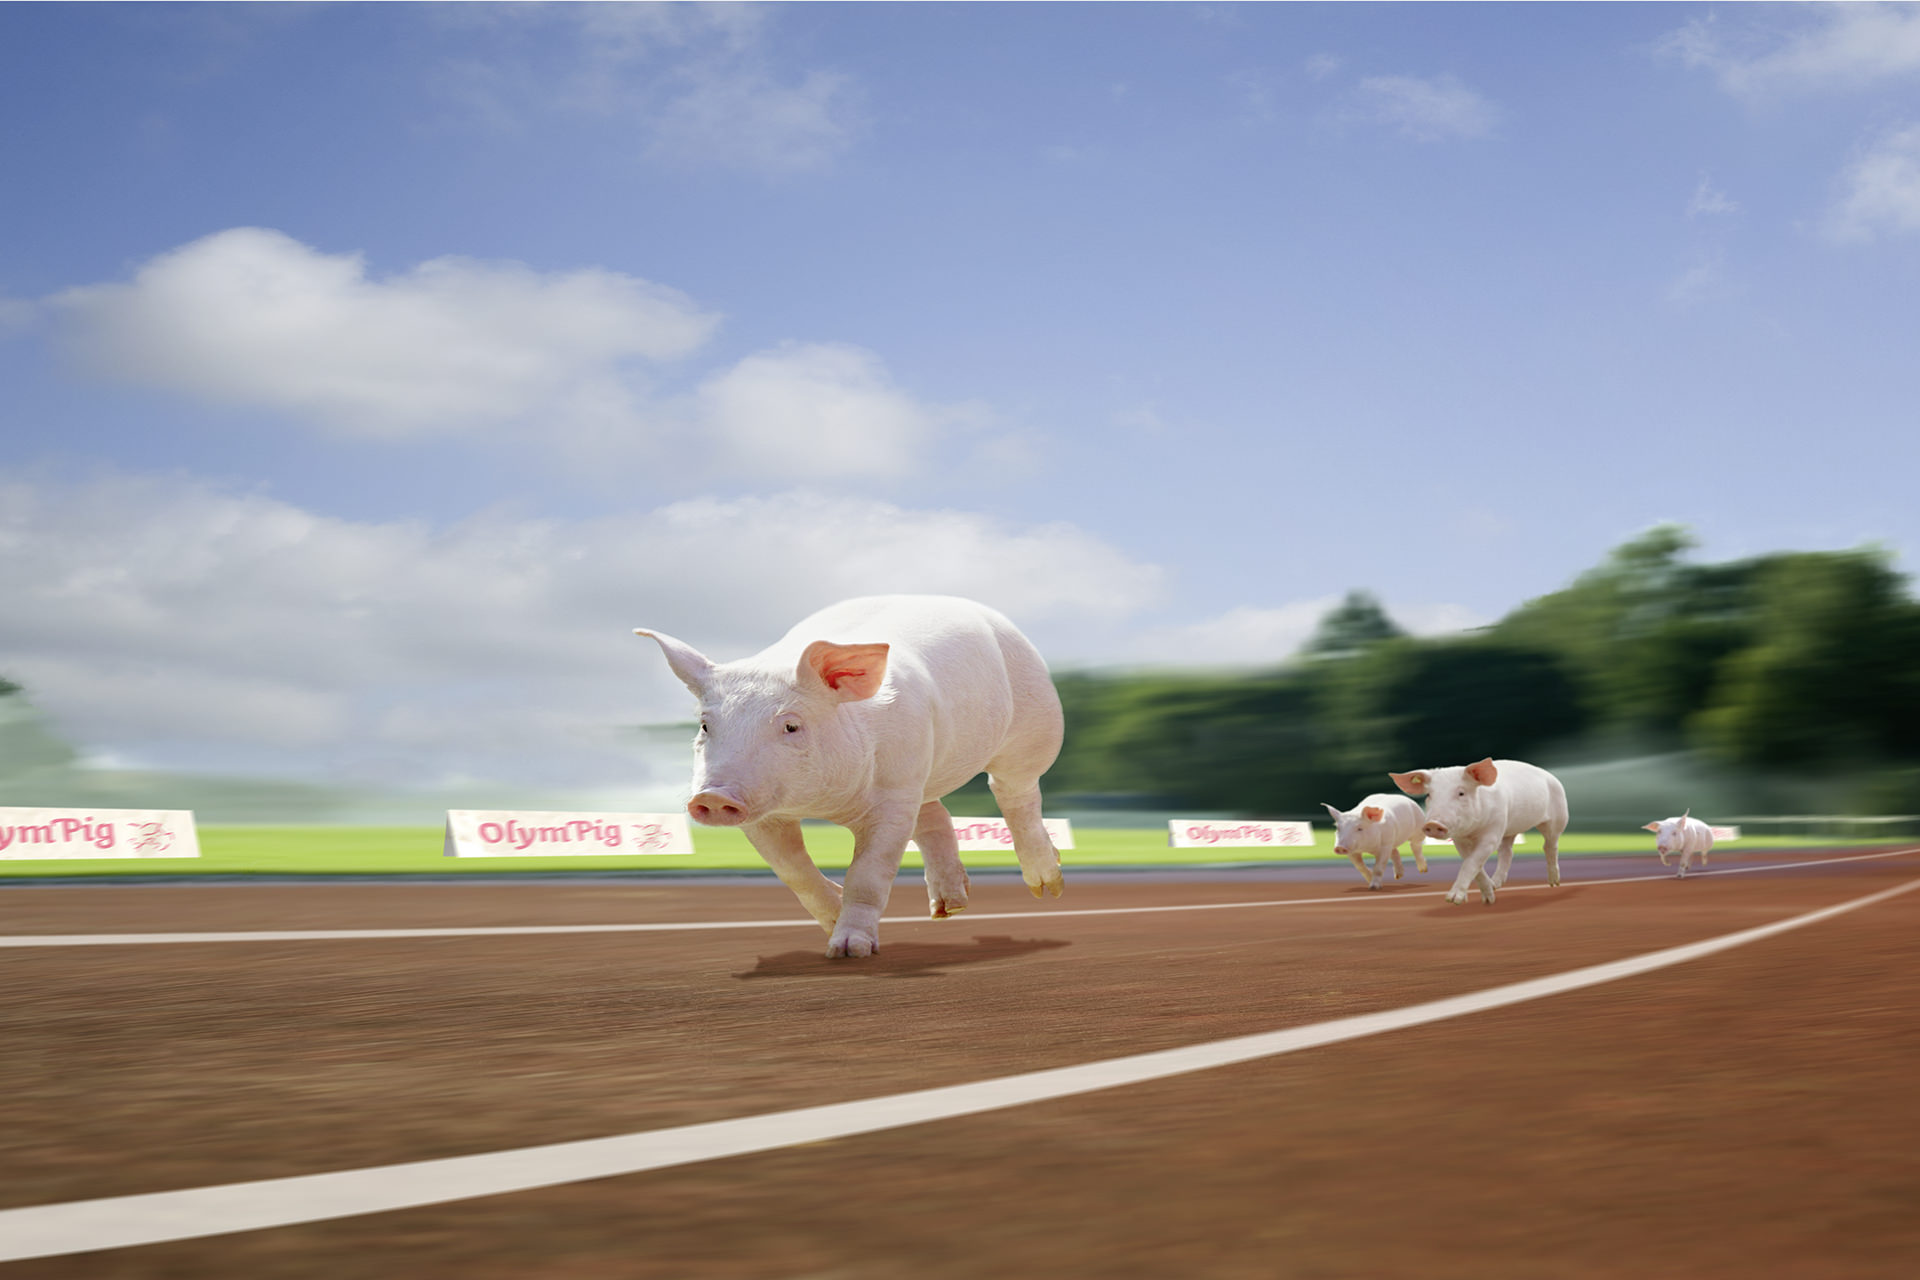 Bildbearbeitung und Bildcomposing Olympig Schweine die rennen